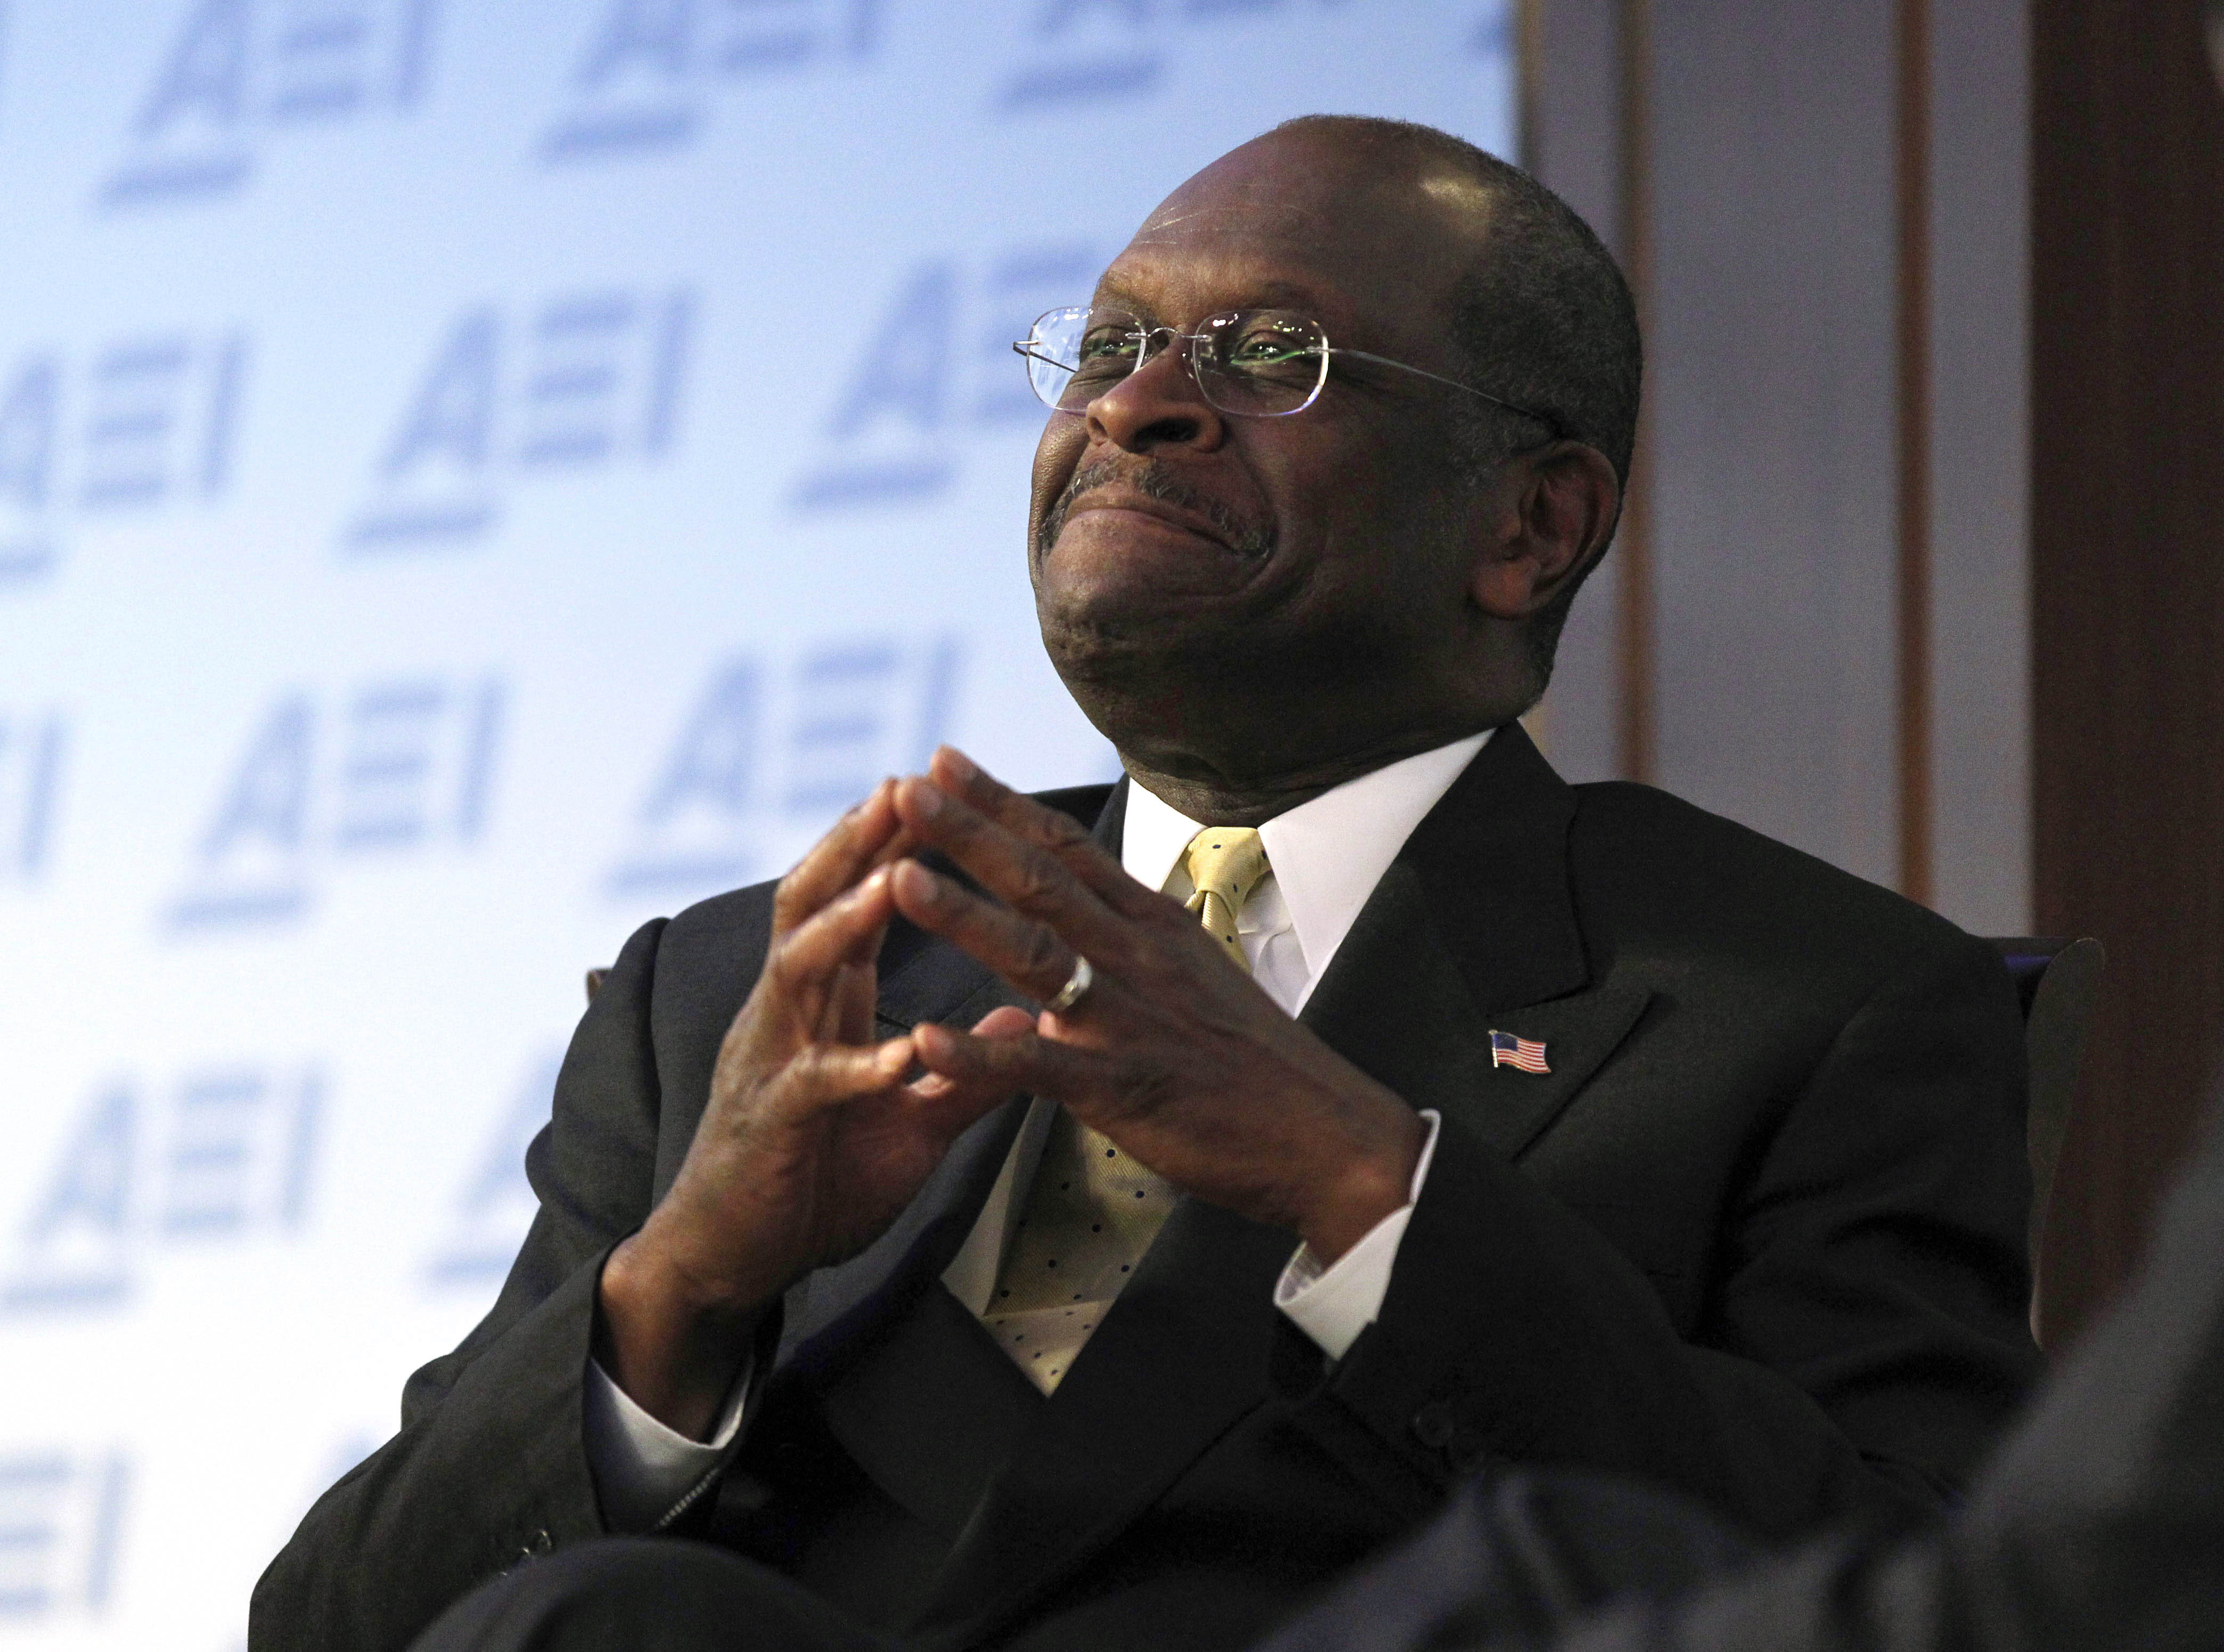 Herman Cain har sagt att han var på Tea Party-möten "innan det blev coolt".